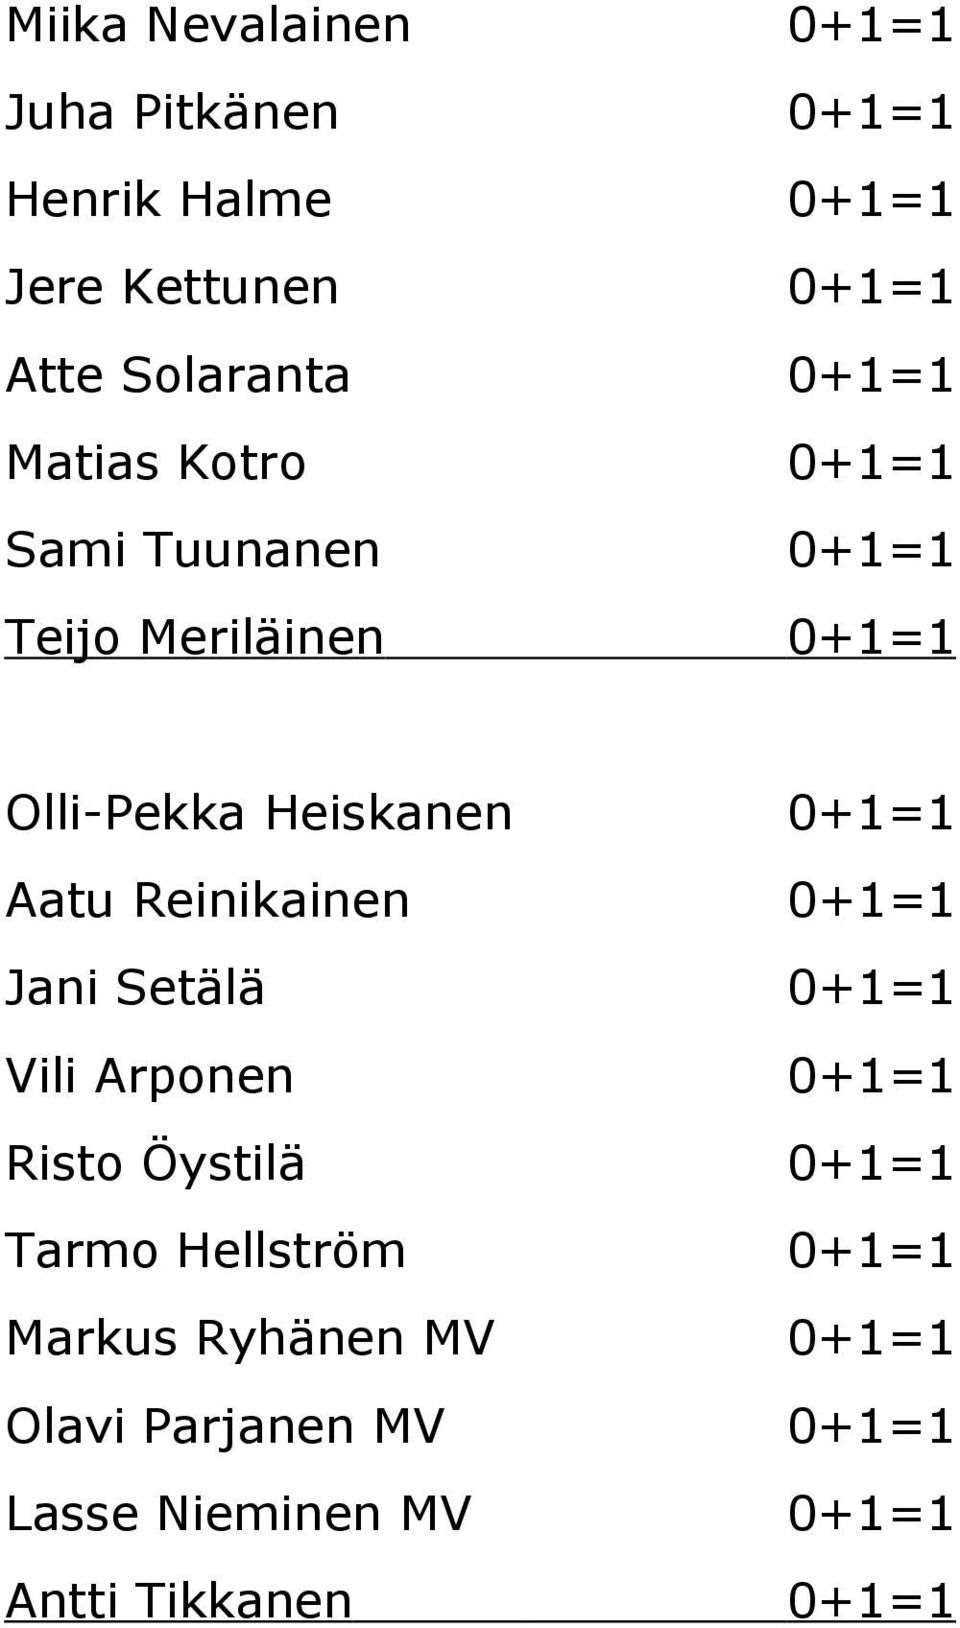 Aatu Reinikainen 0+1=1 Jani Setälä 0+1=1 Vili Arponen 0+1=1 Risto Öystilä 0+1=1 Tarmo Hellström